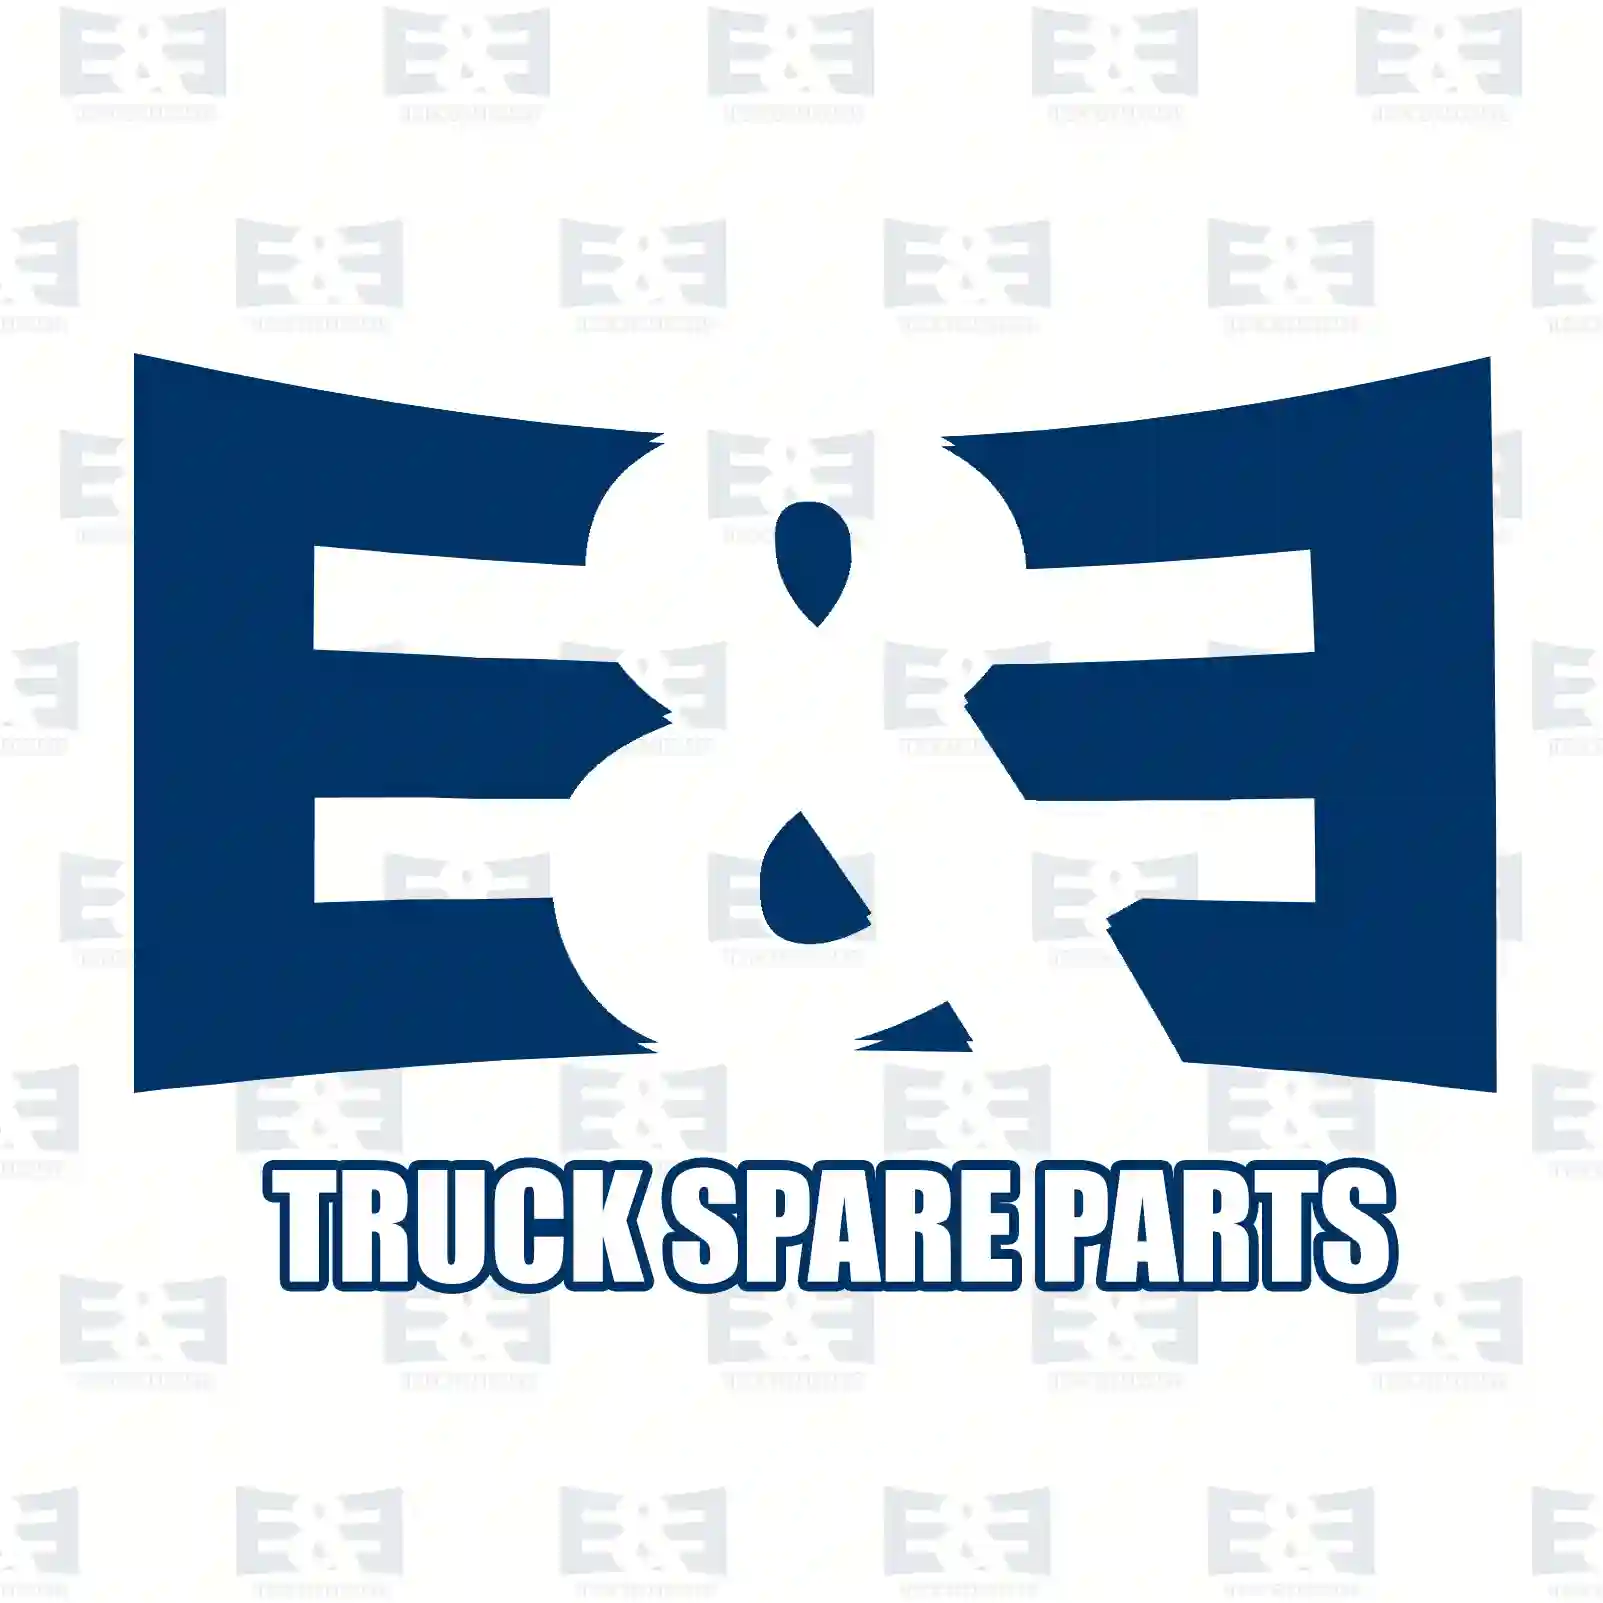 Battery main switch, 2E2298843, 4855754, 50347393 ||  2E2298843 E&E Truck Spare Parts | Truck Spare Parts, Auotomotive Spare Parts Battery main switch, 2E2298843, 4855754, 50347393 ||  2E2298843 E&E Truck Spare Parts | Truck Spare Parts, Auotomotive Spare Parts